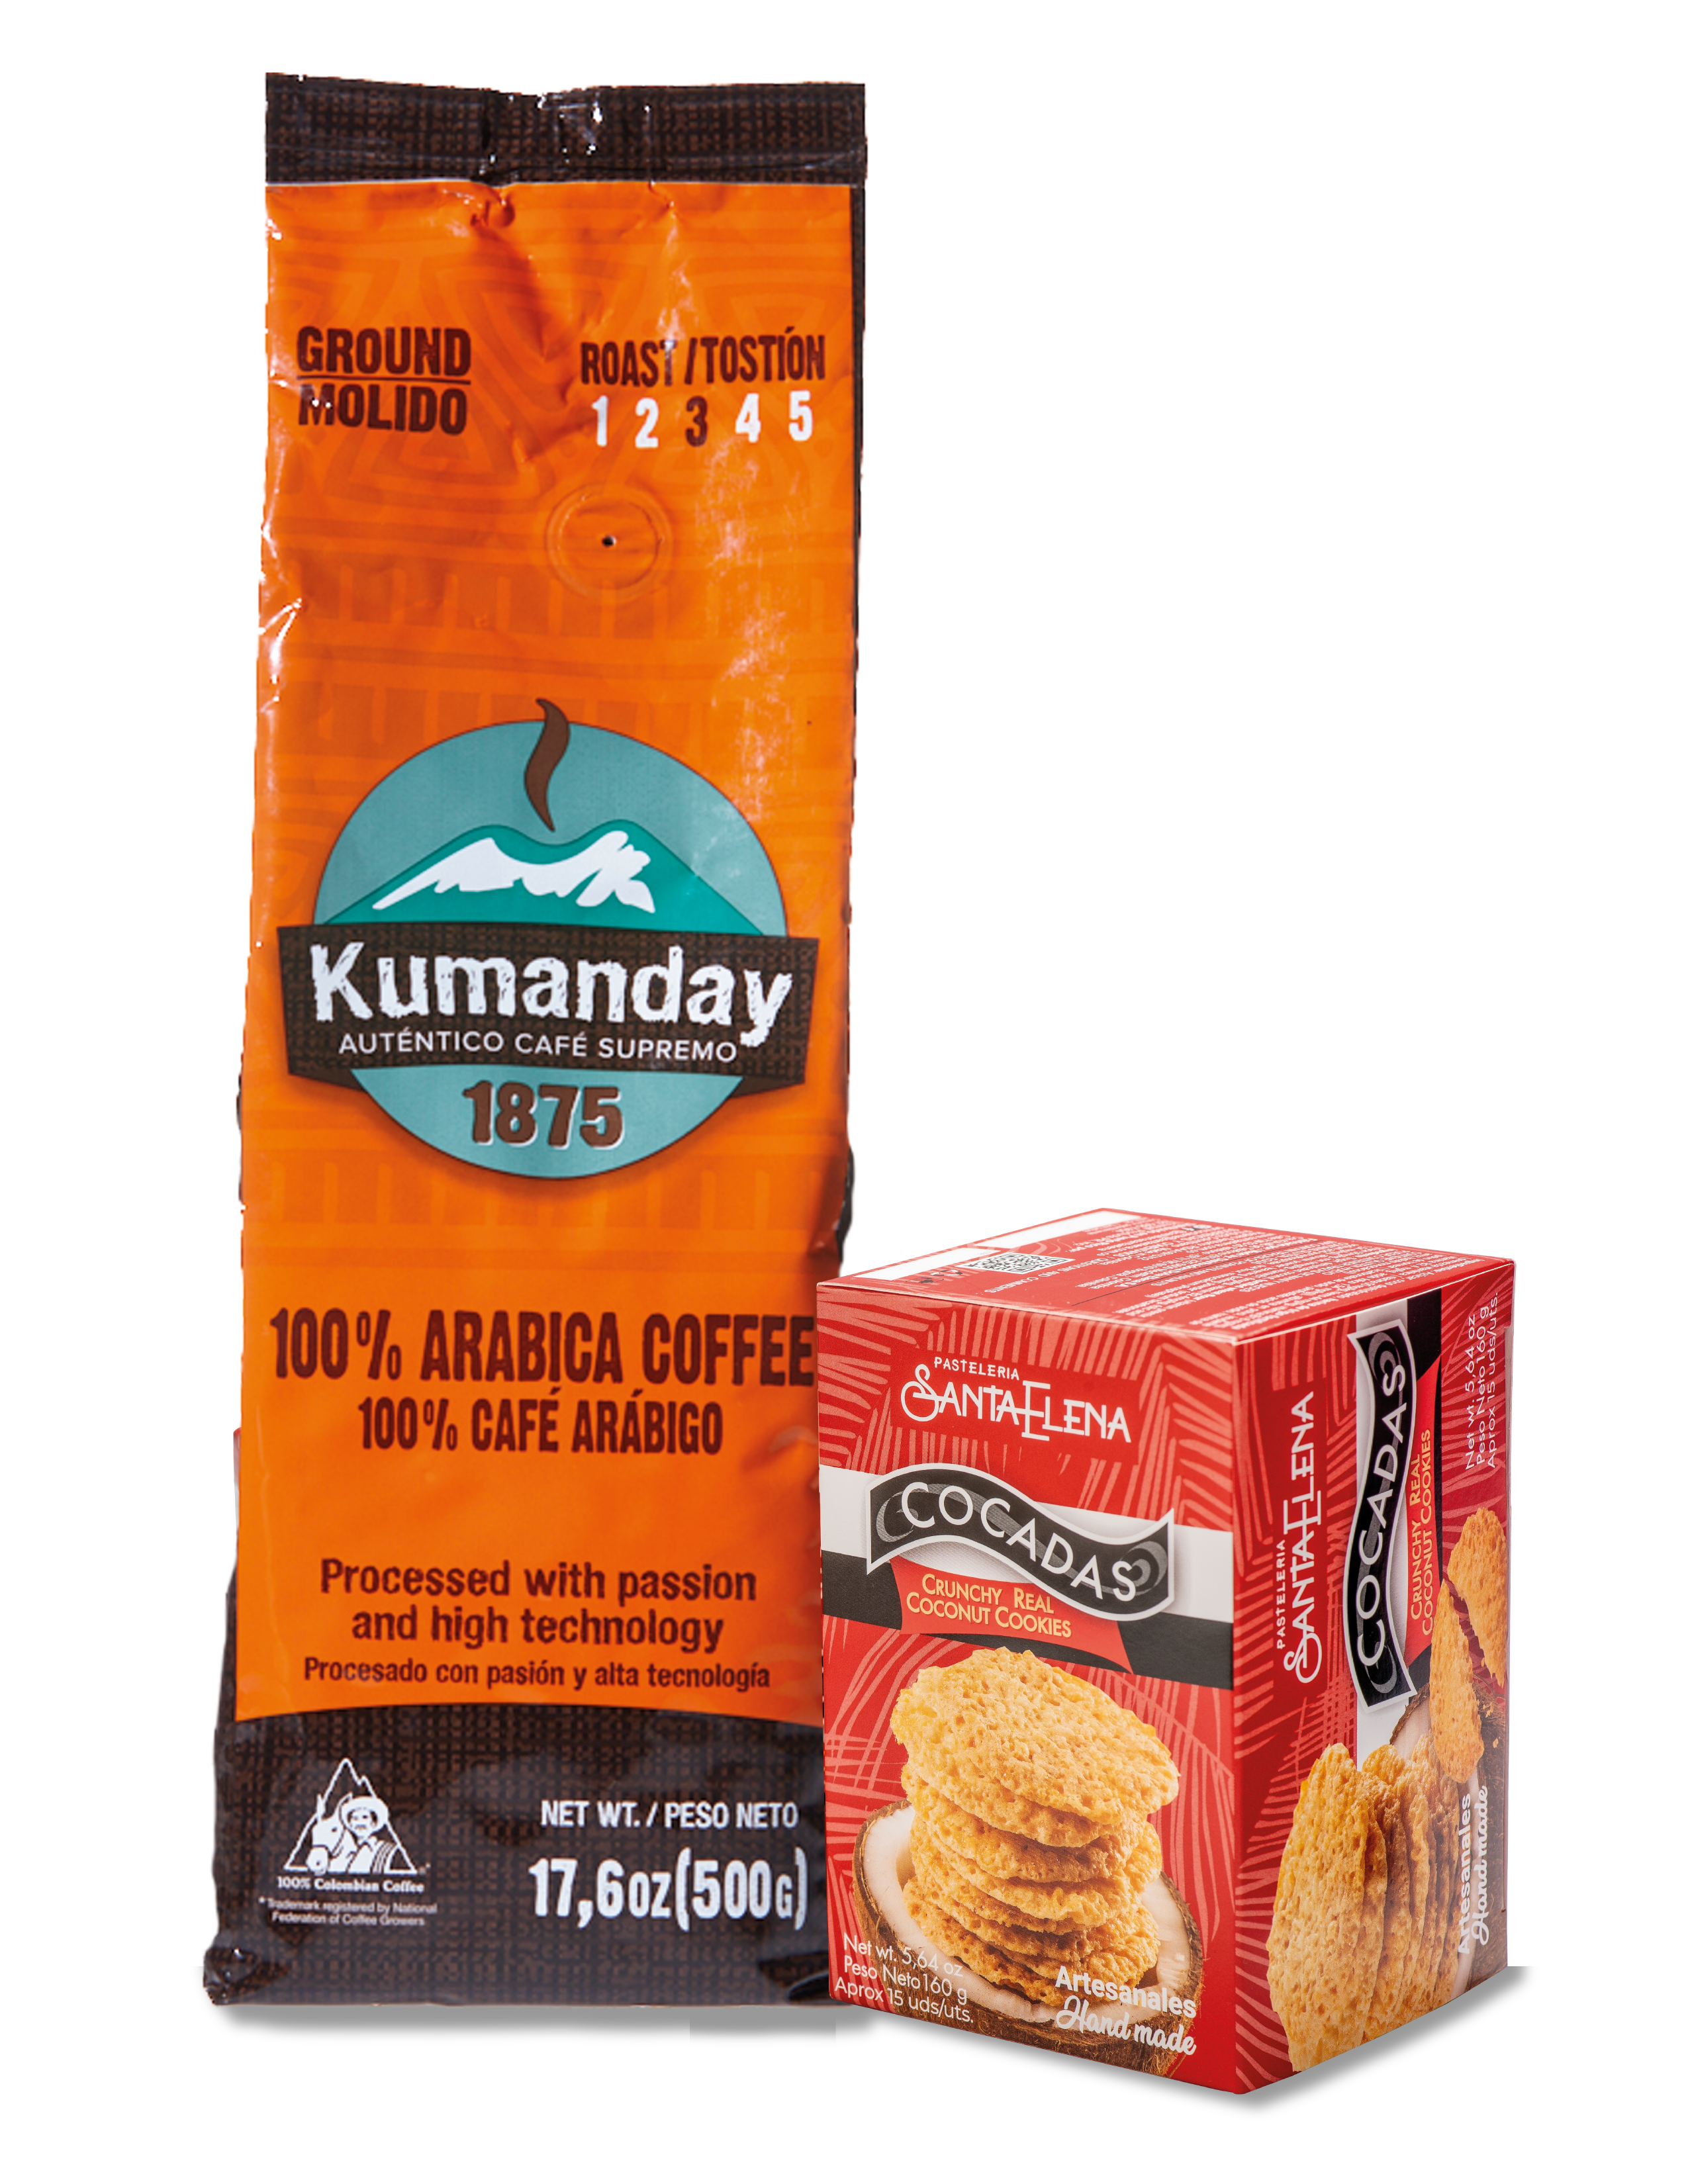 Pack Café Kumanday+ Cocadas Santa Elena (1 bolsa de café x 500 gramos + 1 caja de cocadas x 15 unidades) pic